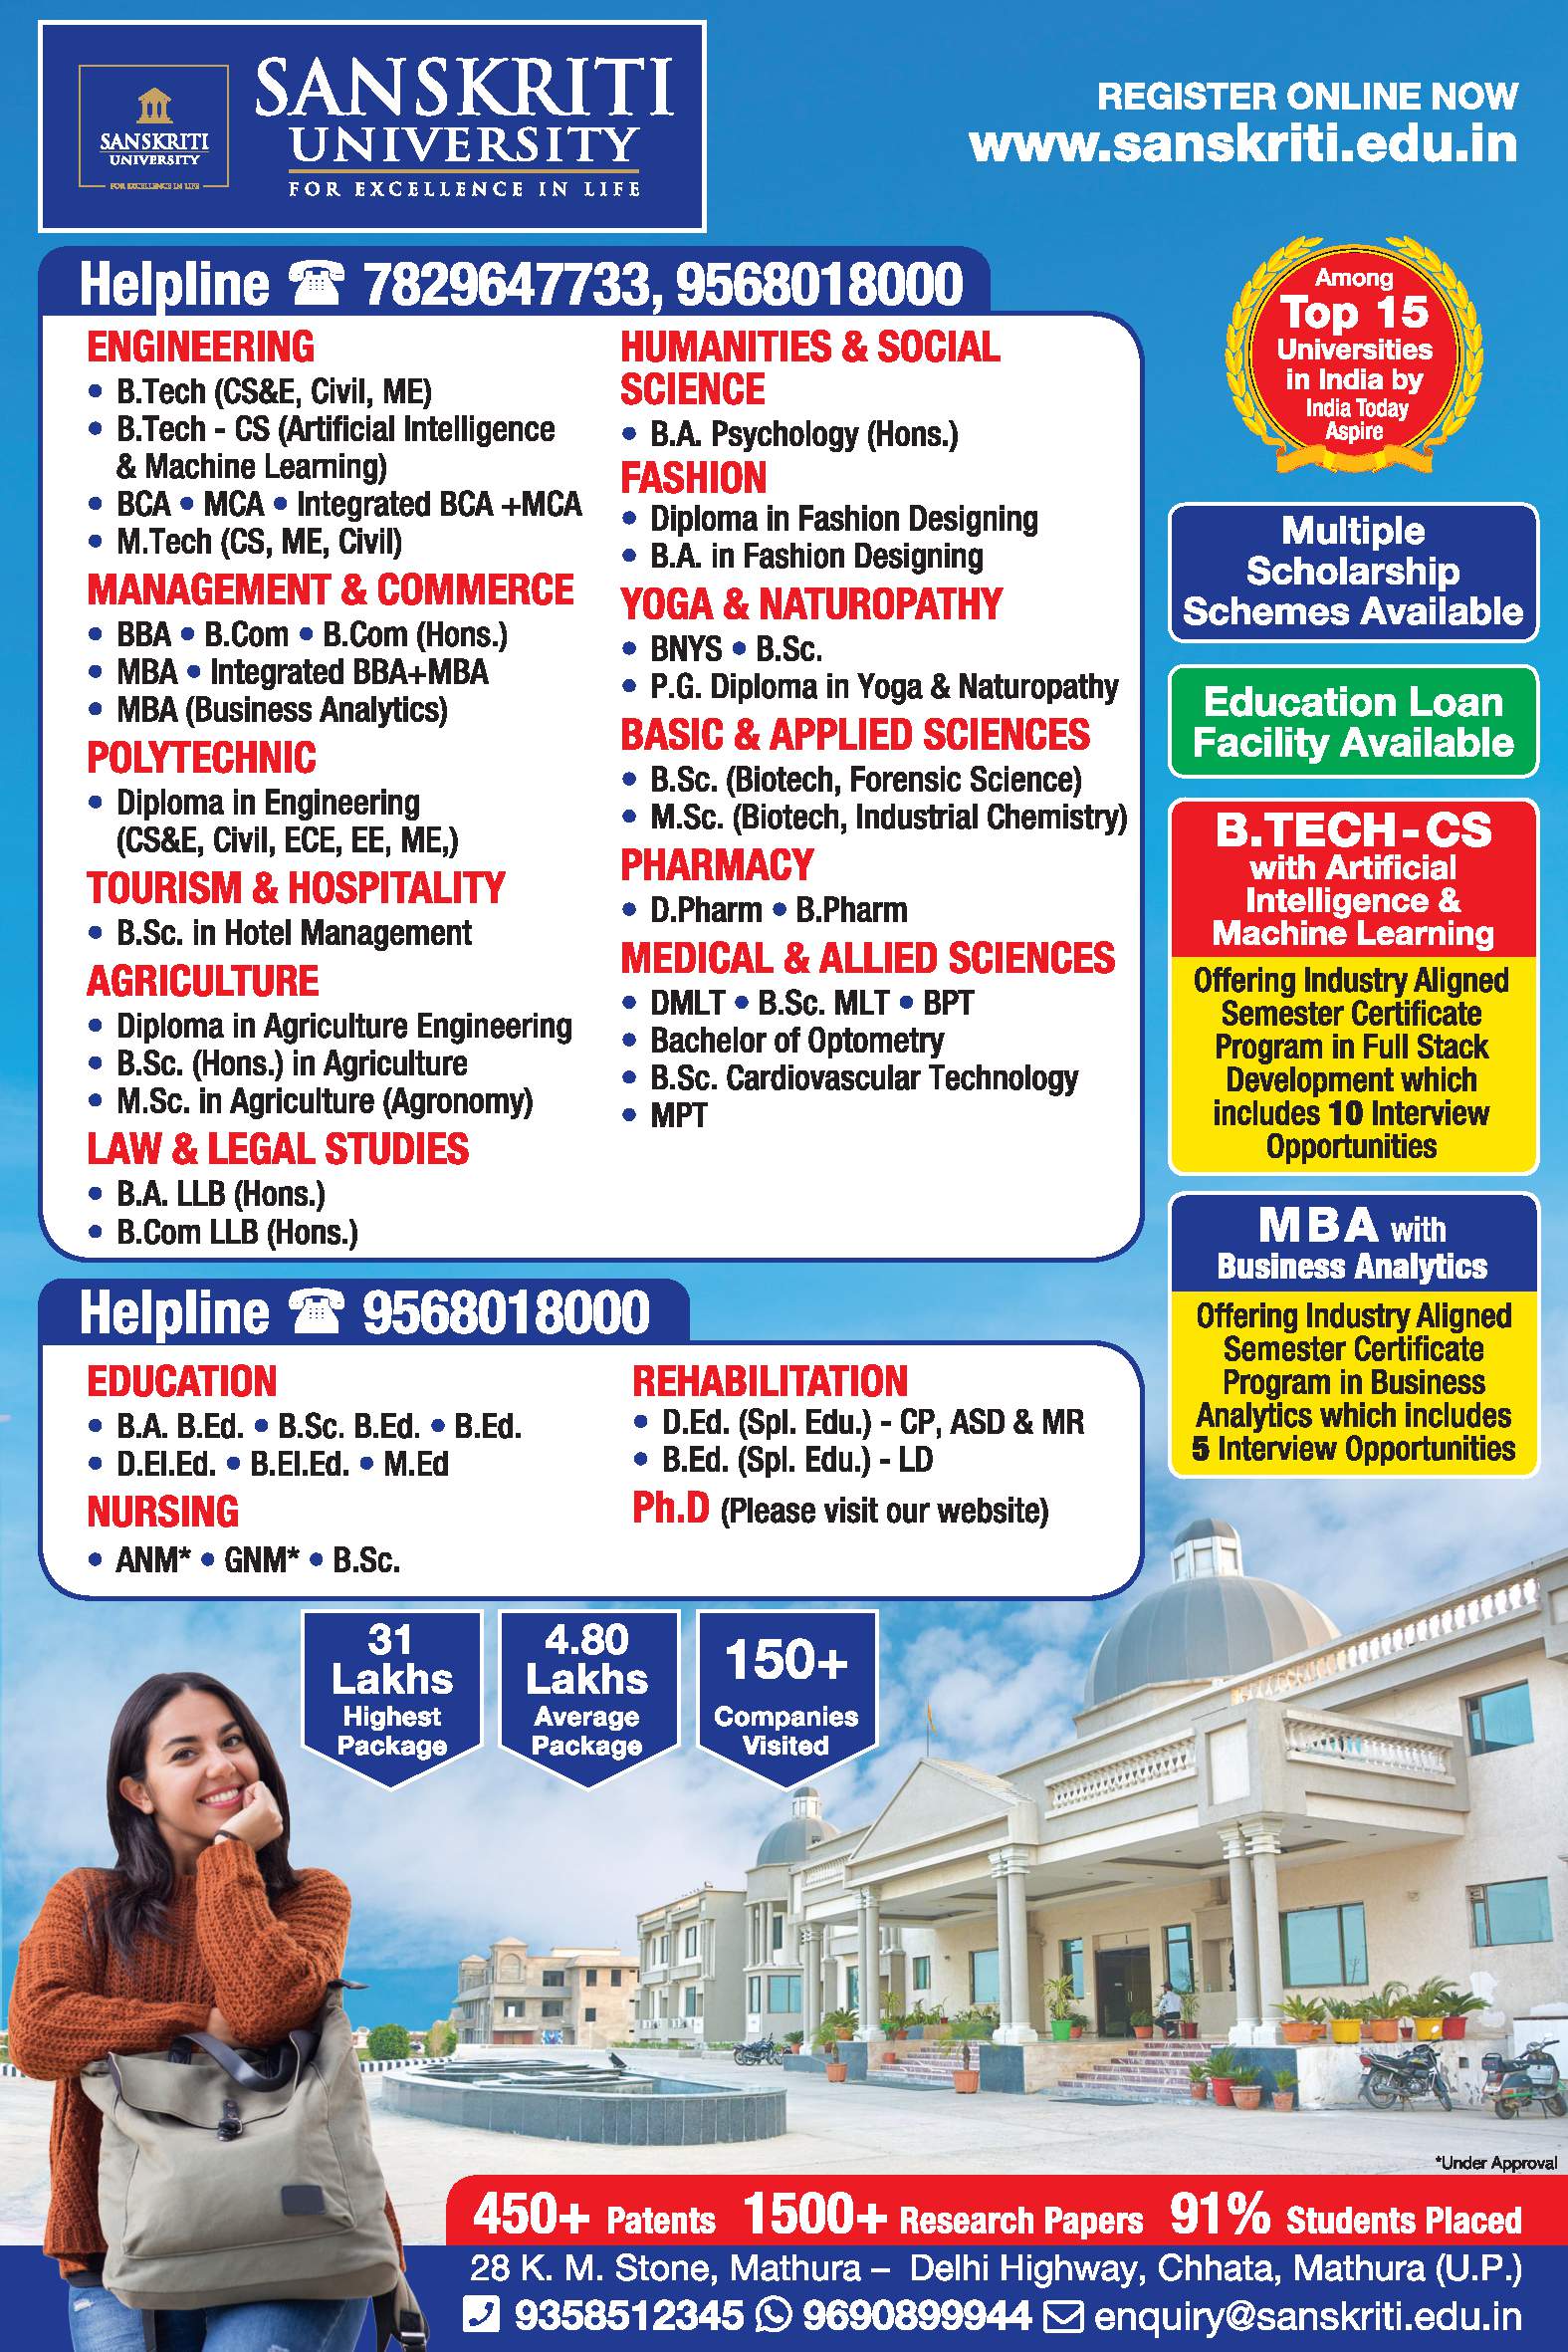 sanskriti-university-multiple-scholarship-schemes-available-ad-dainik-jagran-lucknow-8-7-2021